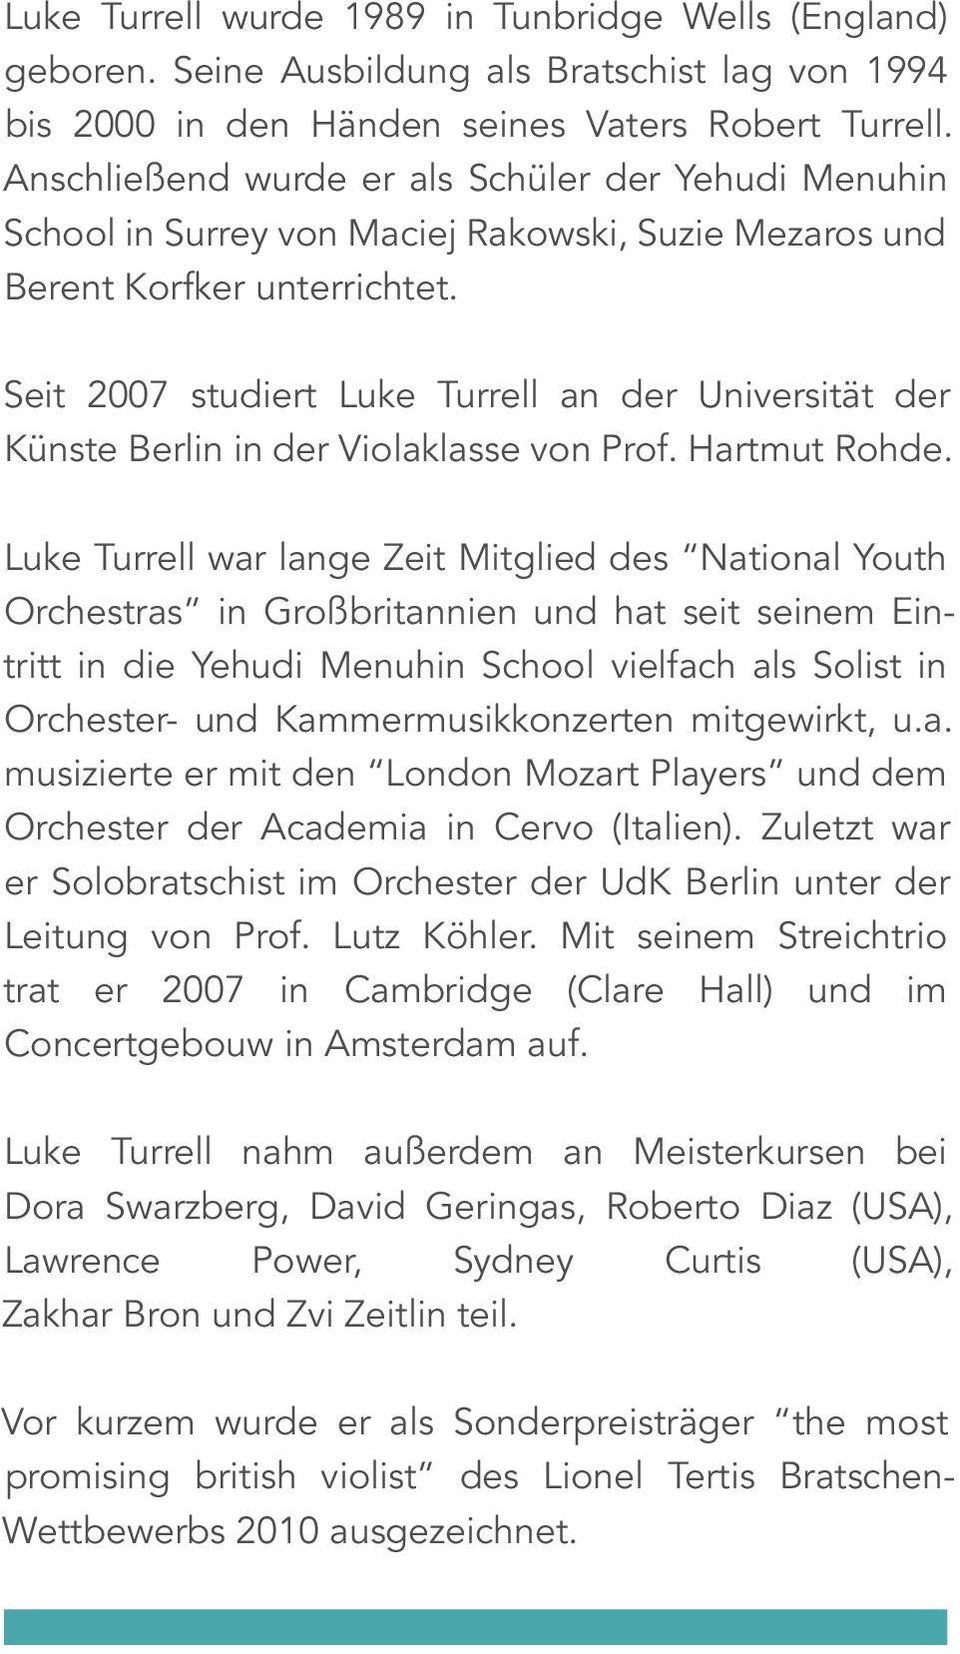 Seit 2007 studiert Luke Turrell an der Universität der Künste Berlin in der Violaklasse von Prof. Hartmut Rohde.